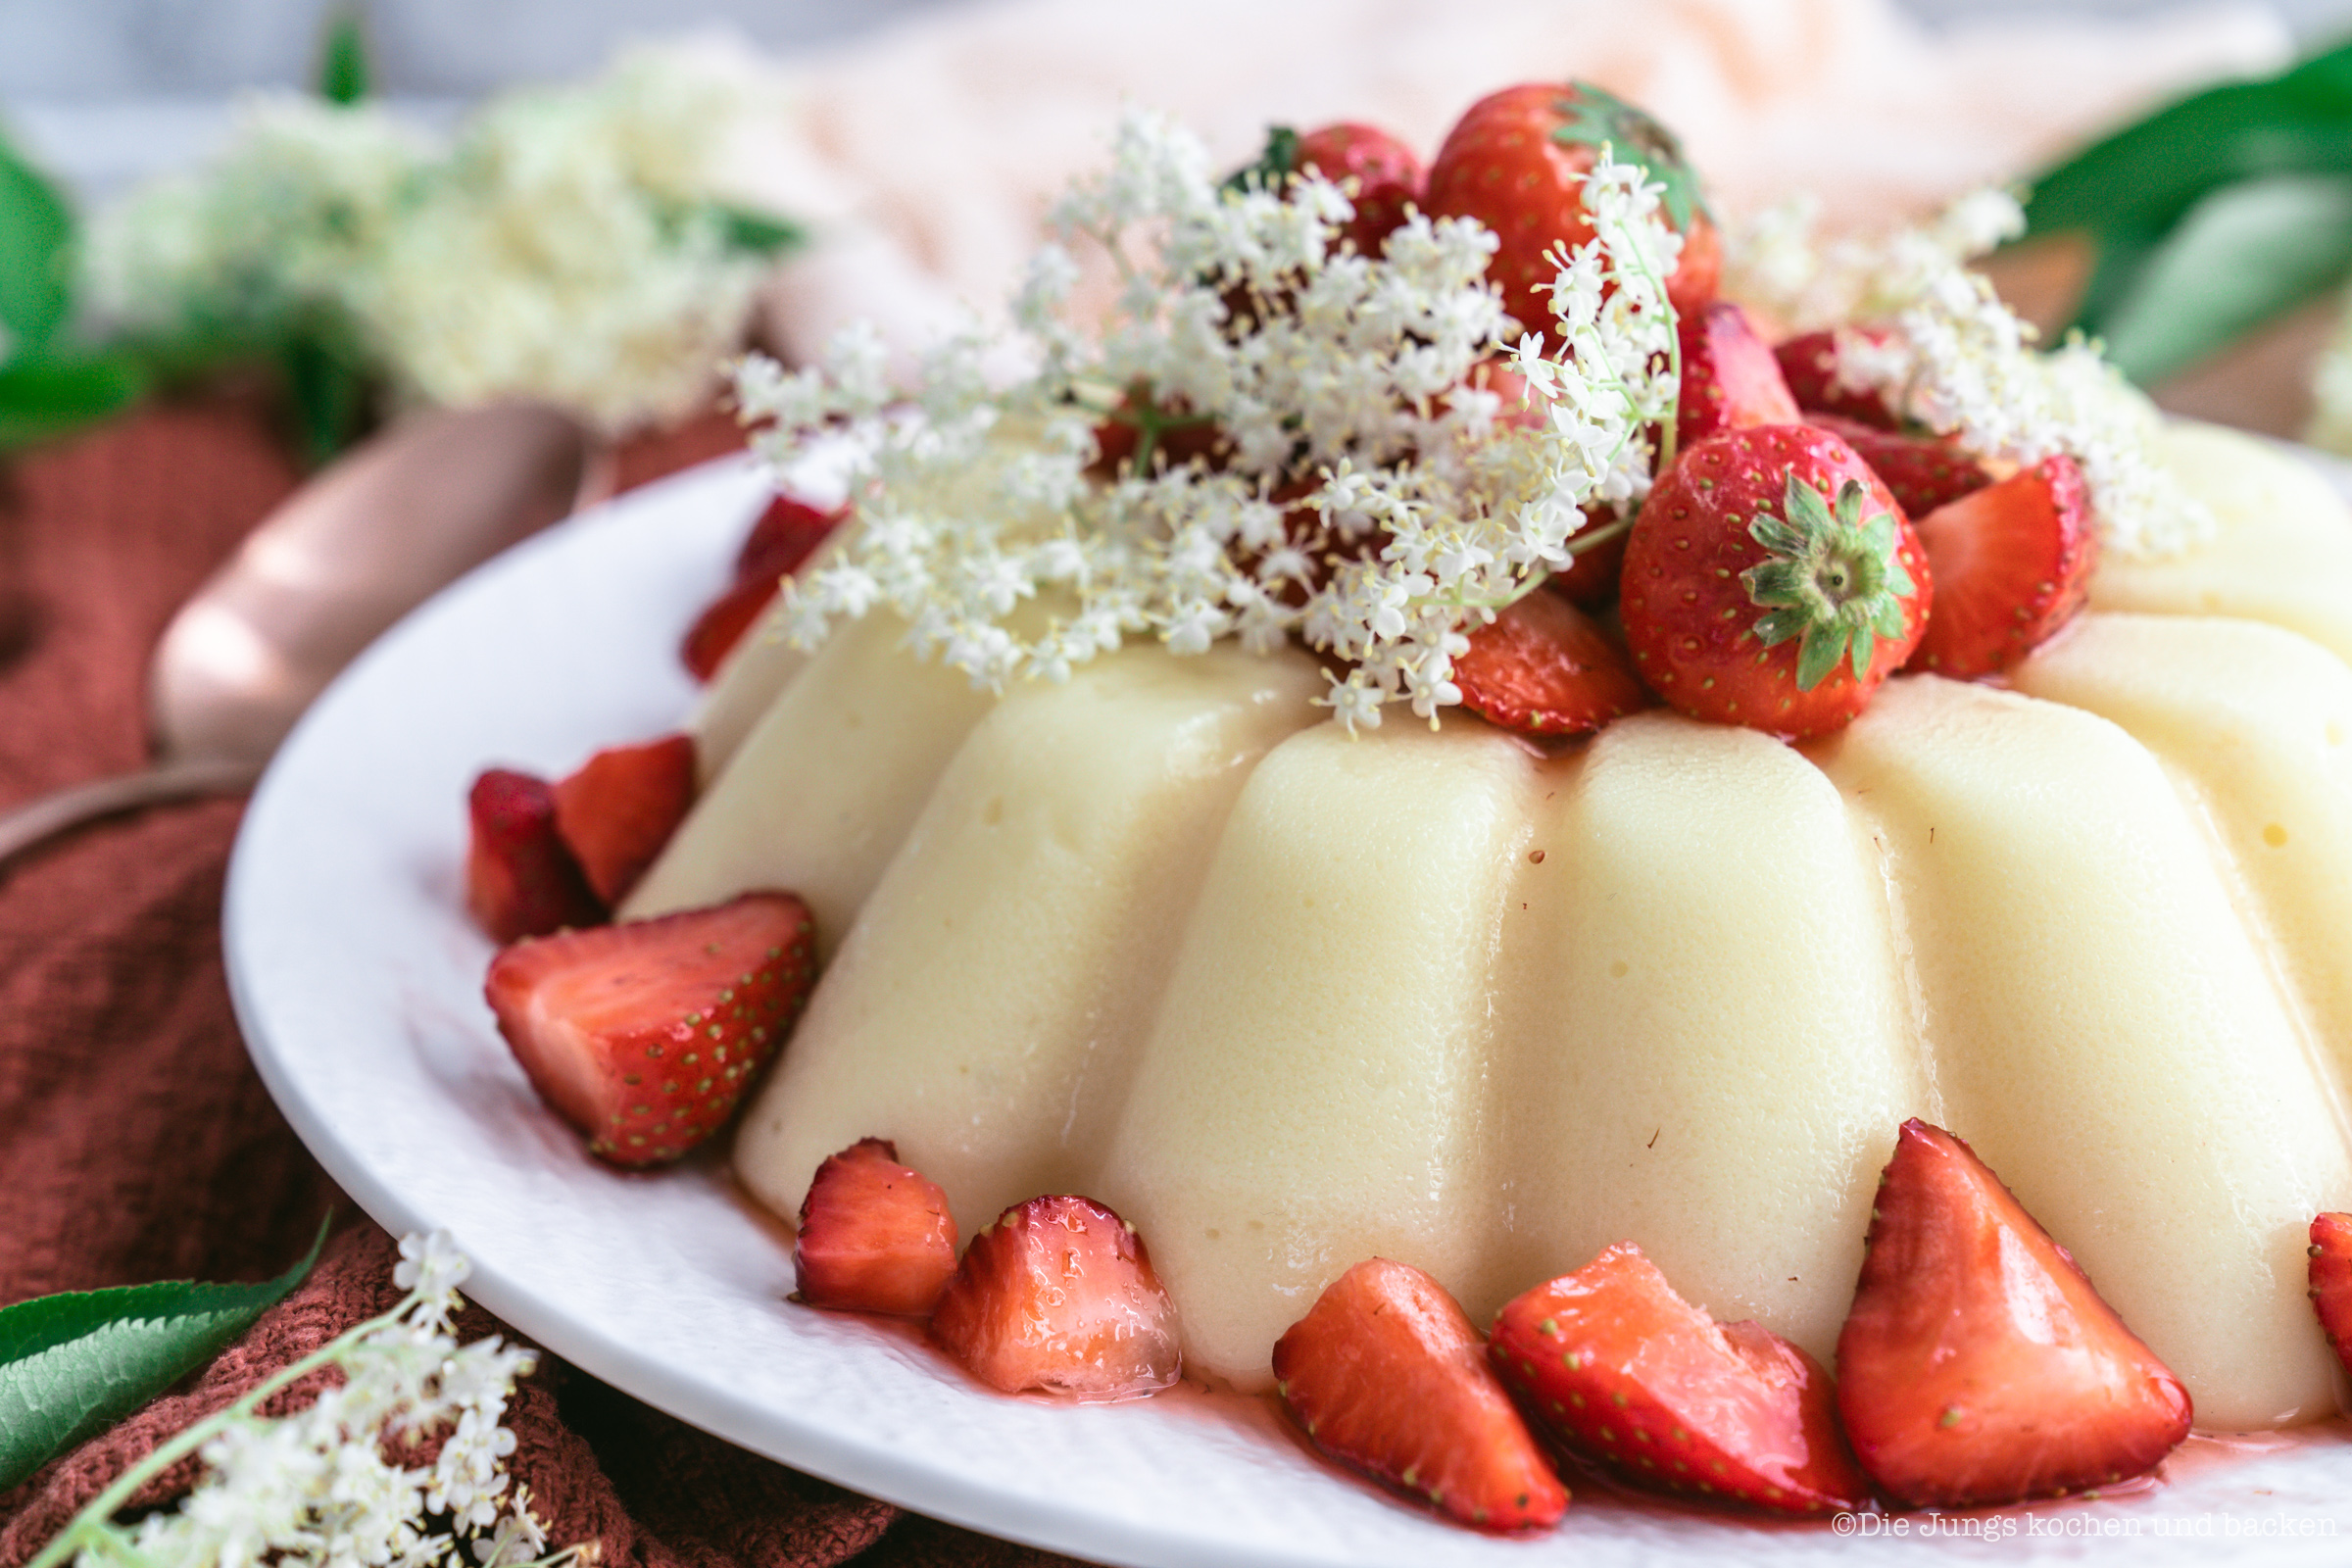 Rezept für gestürzten Holunderblütenpudding mit Erdbeeren. Ein tolles Dessert, das auch noch ein Hingucker ist! Der Pudding lässt sich easy vorbereiten und ist schnell gemacht. #holunderblütensirup #dessert #rezepte